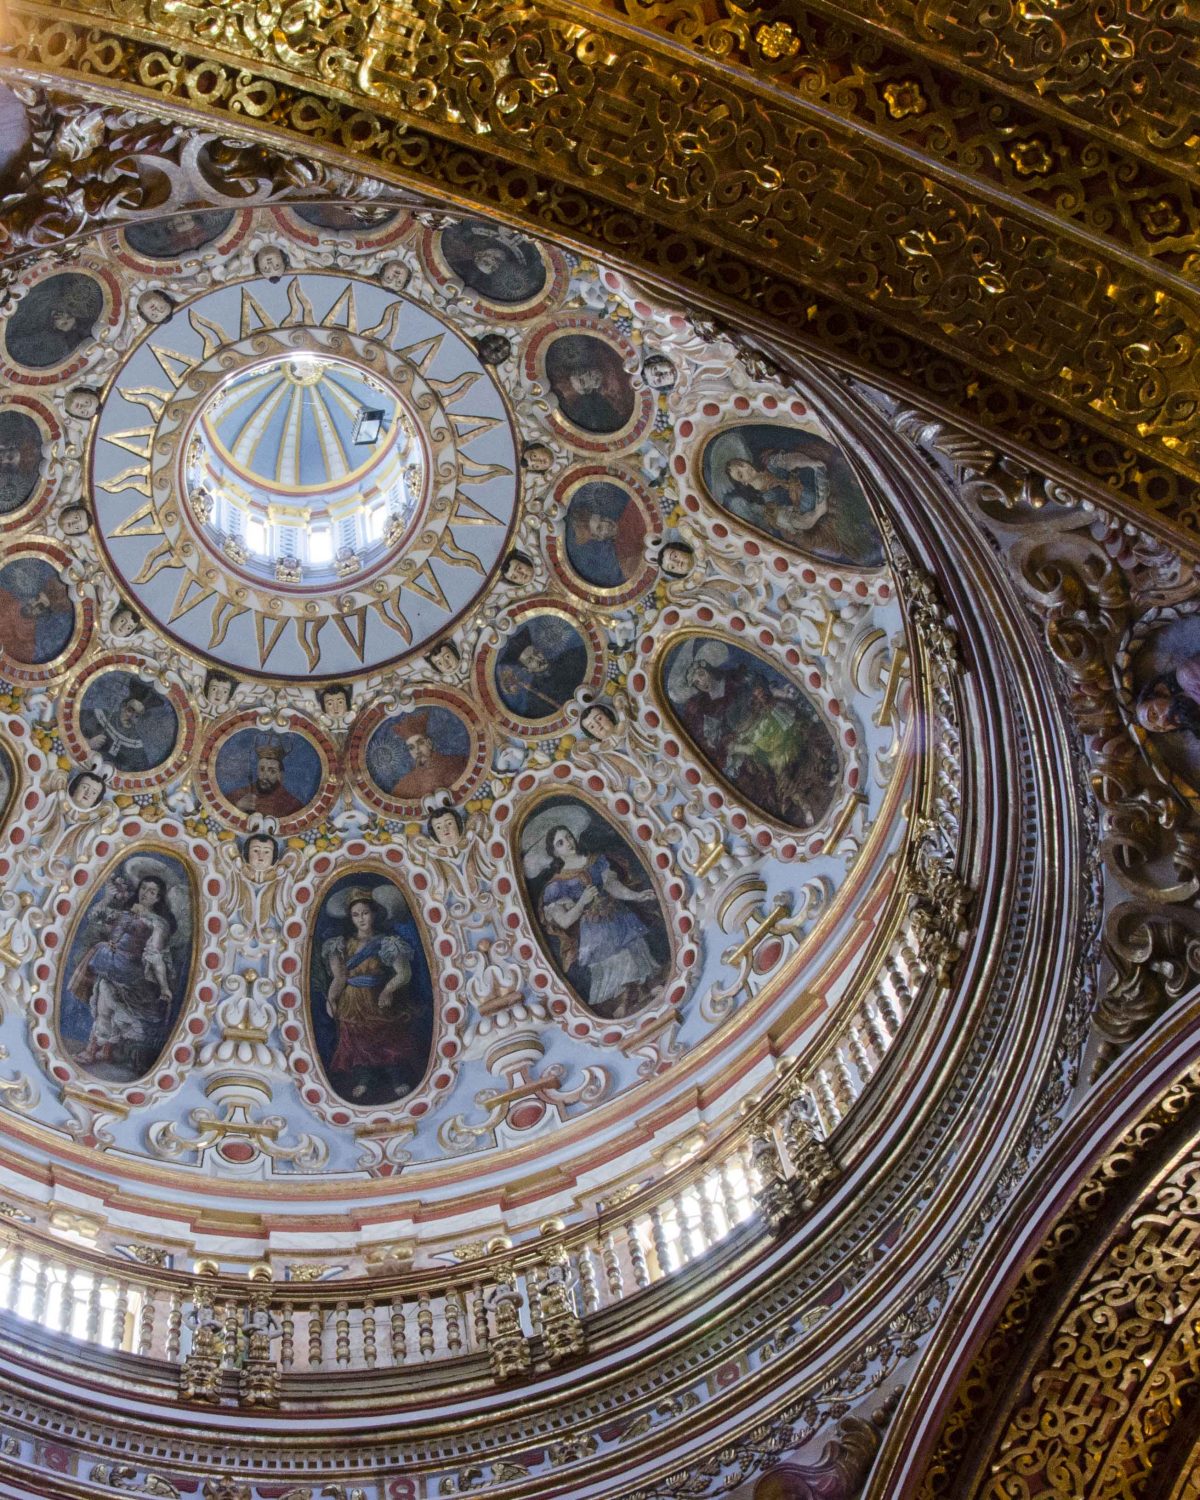 Mirando hacia la cúpula central en tonos de azul claro, retratos oscuros y adornos dorados